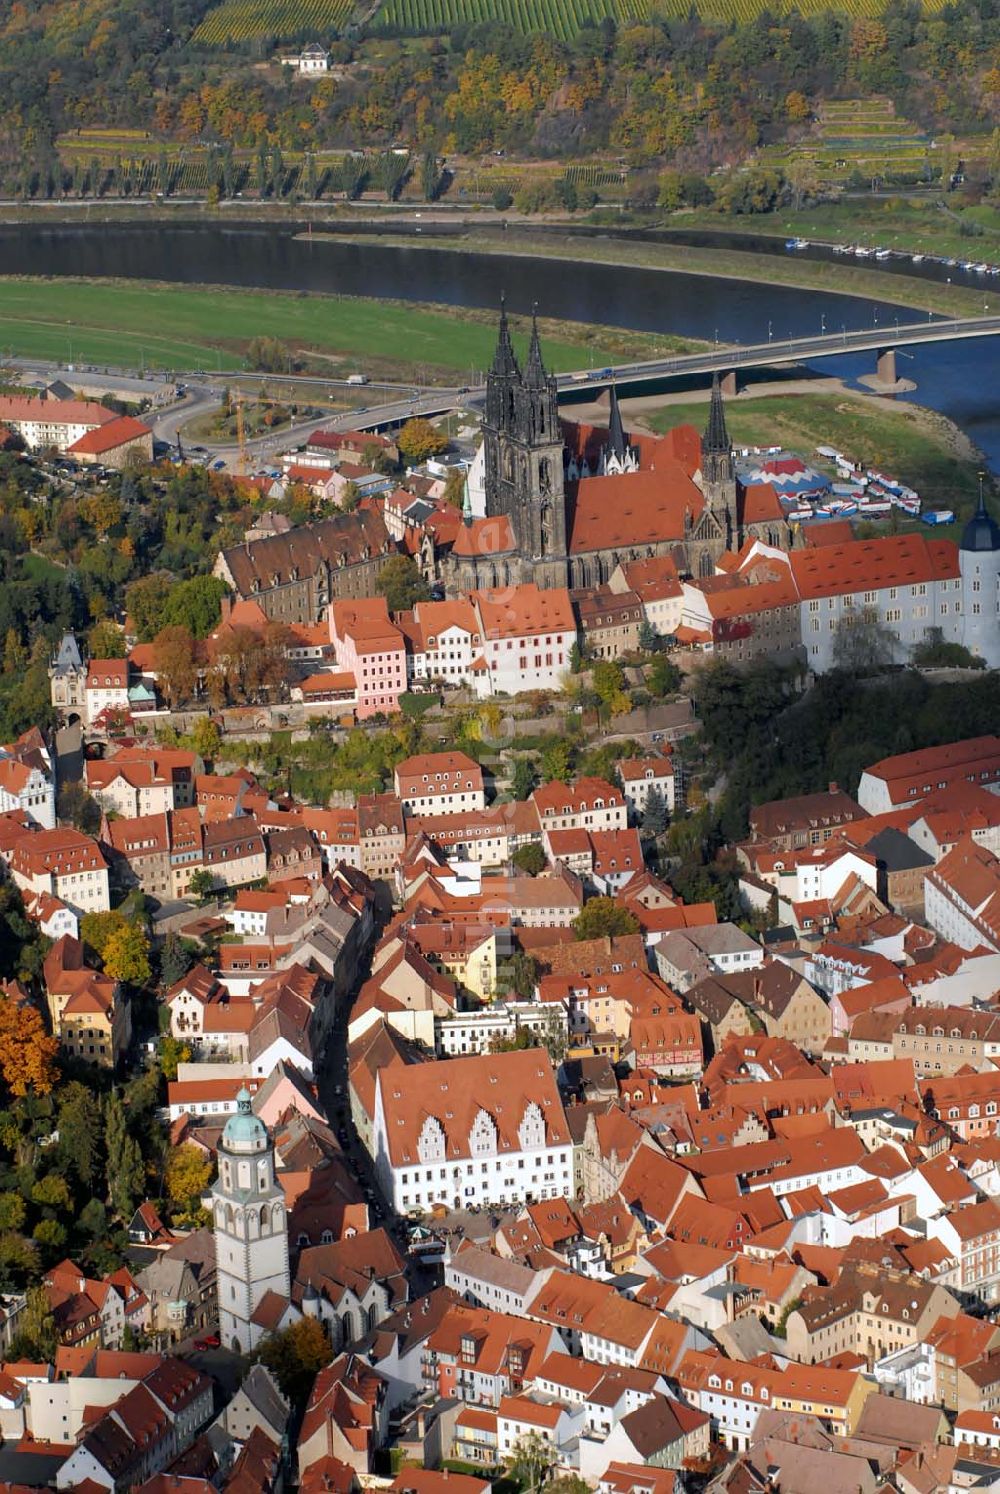 Luftbild Meißen - Albrechtsburg in Meissen